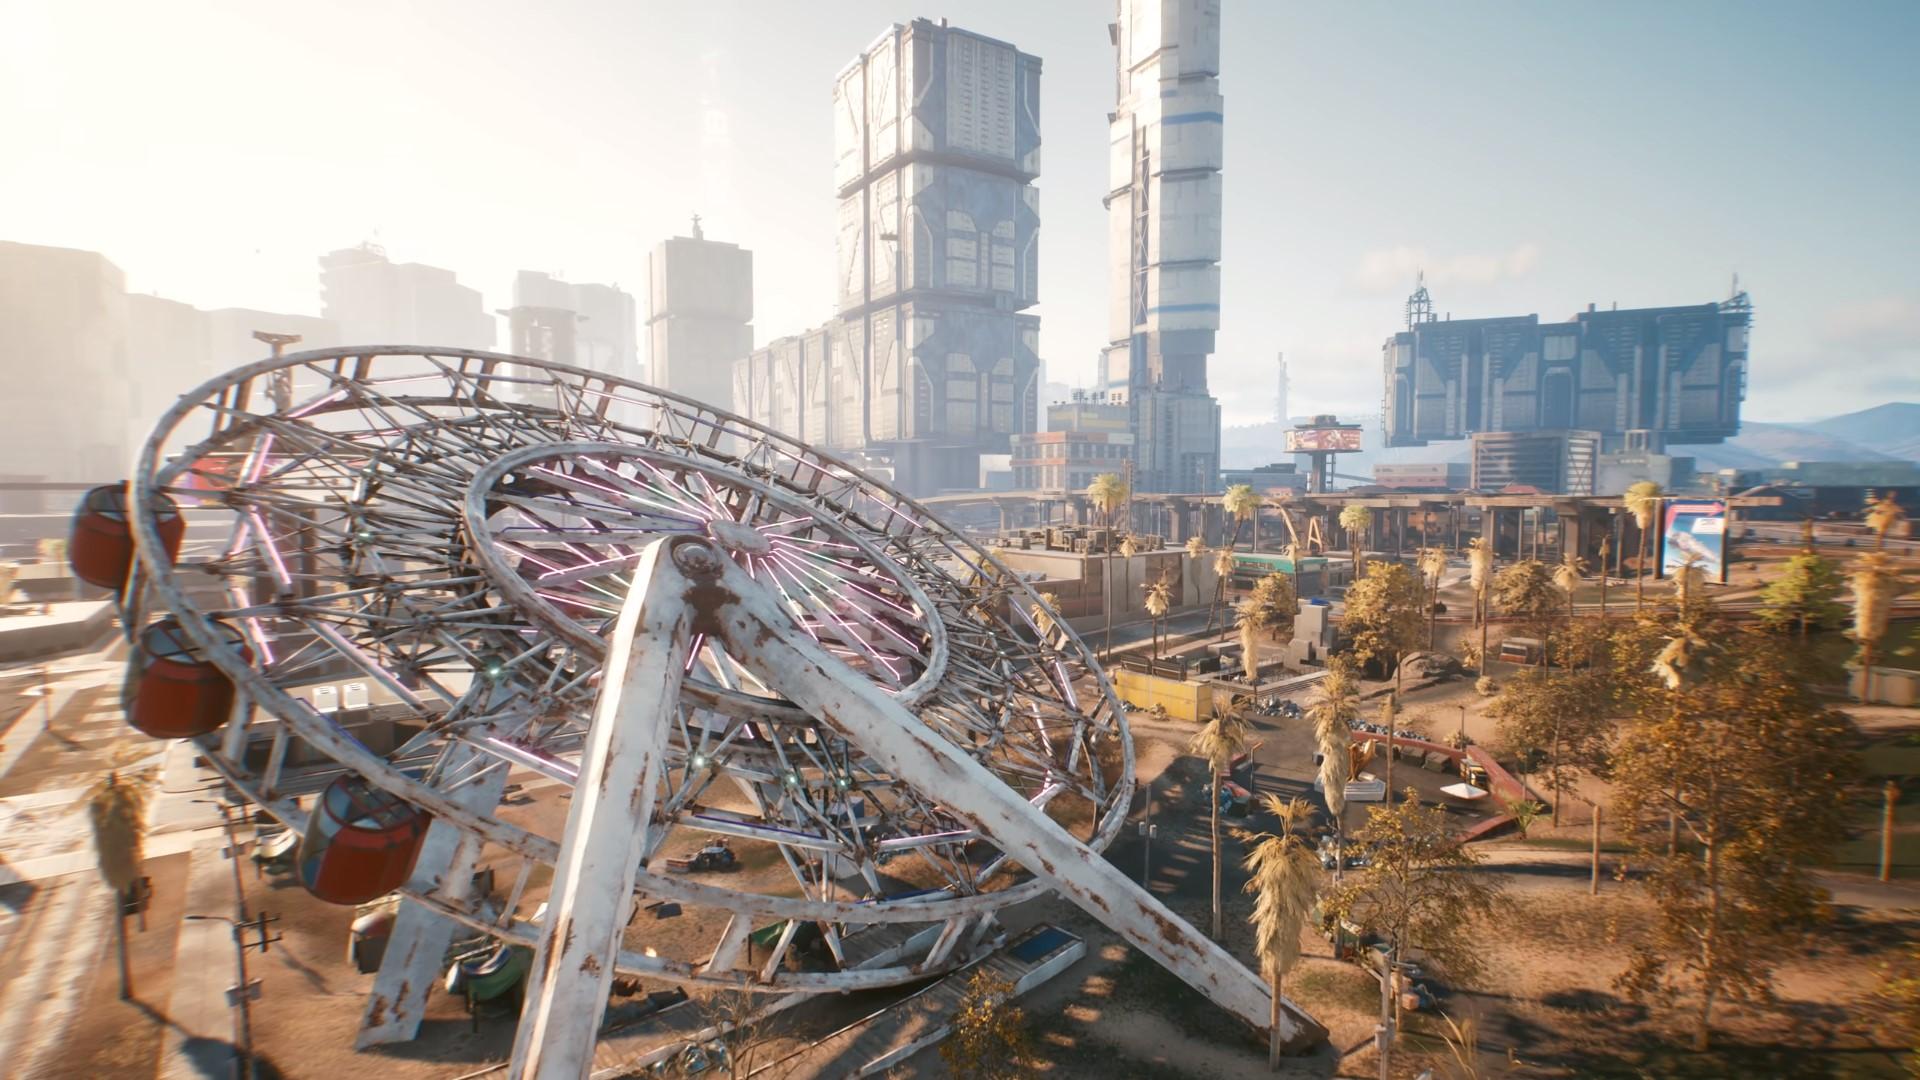 A fallen over Ferris Wheel in Cyberpunk 2077